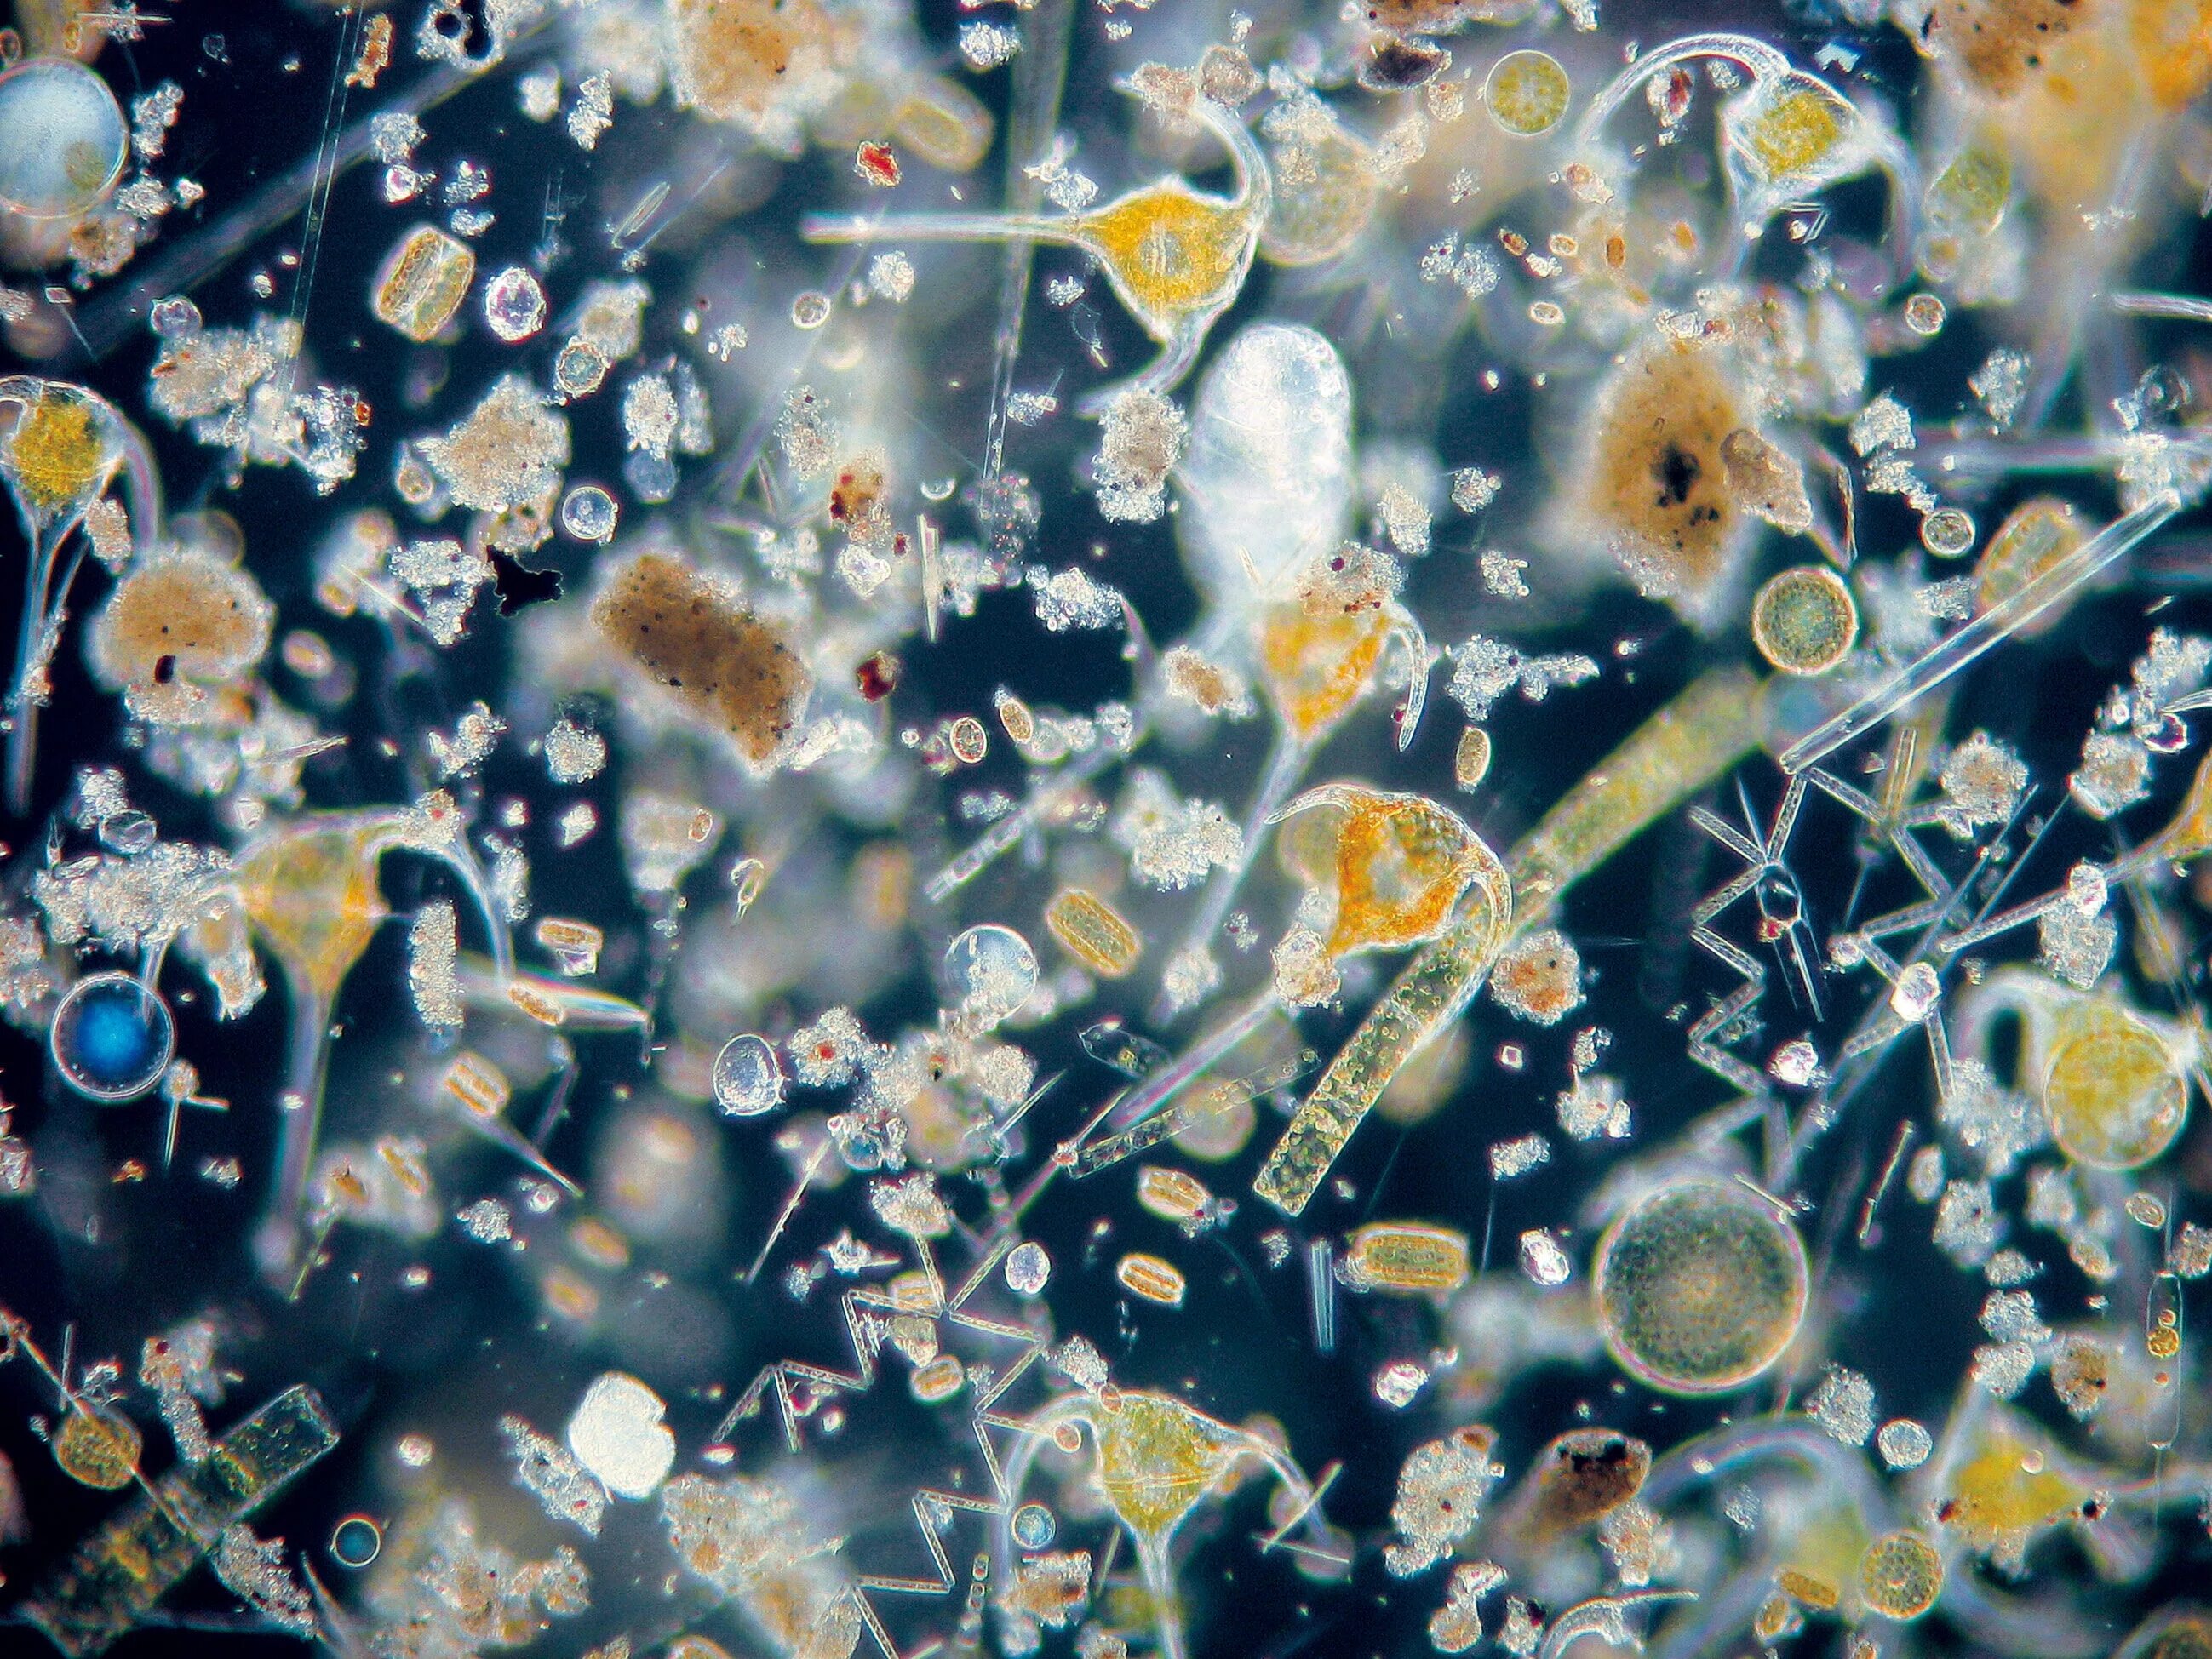 Бактерии пресной воды. Водопроводная вода под микроскопом. Водопроводная вода под микроскопо. Морская вода под микроскопом. Микроорганизмы в воде под микроскопом.